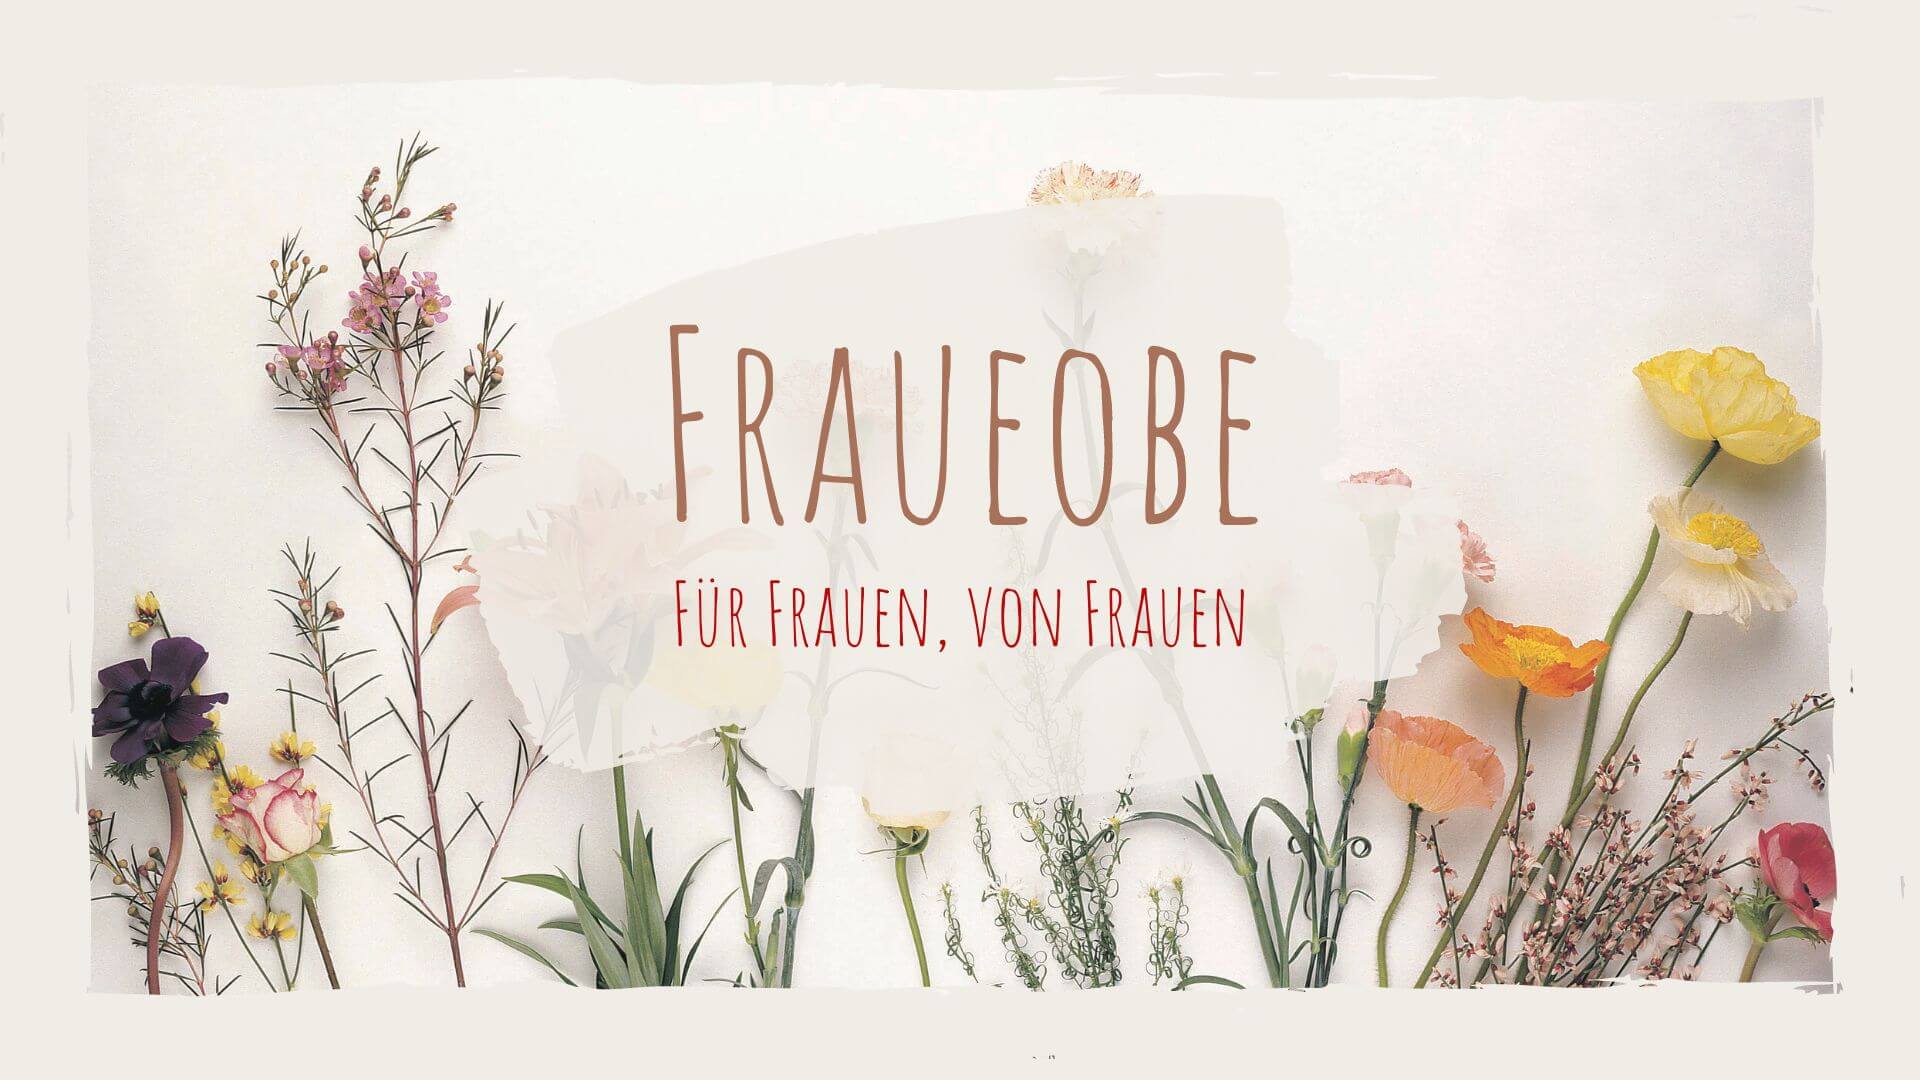 Fraueobe (1920 × 1080 px)